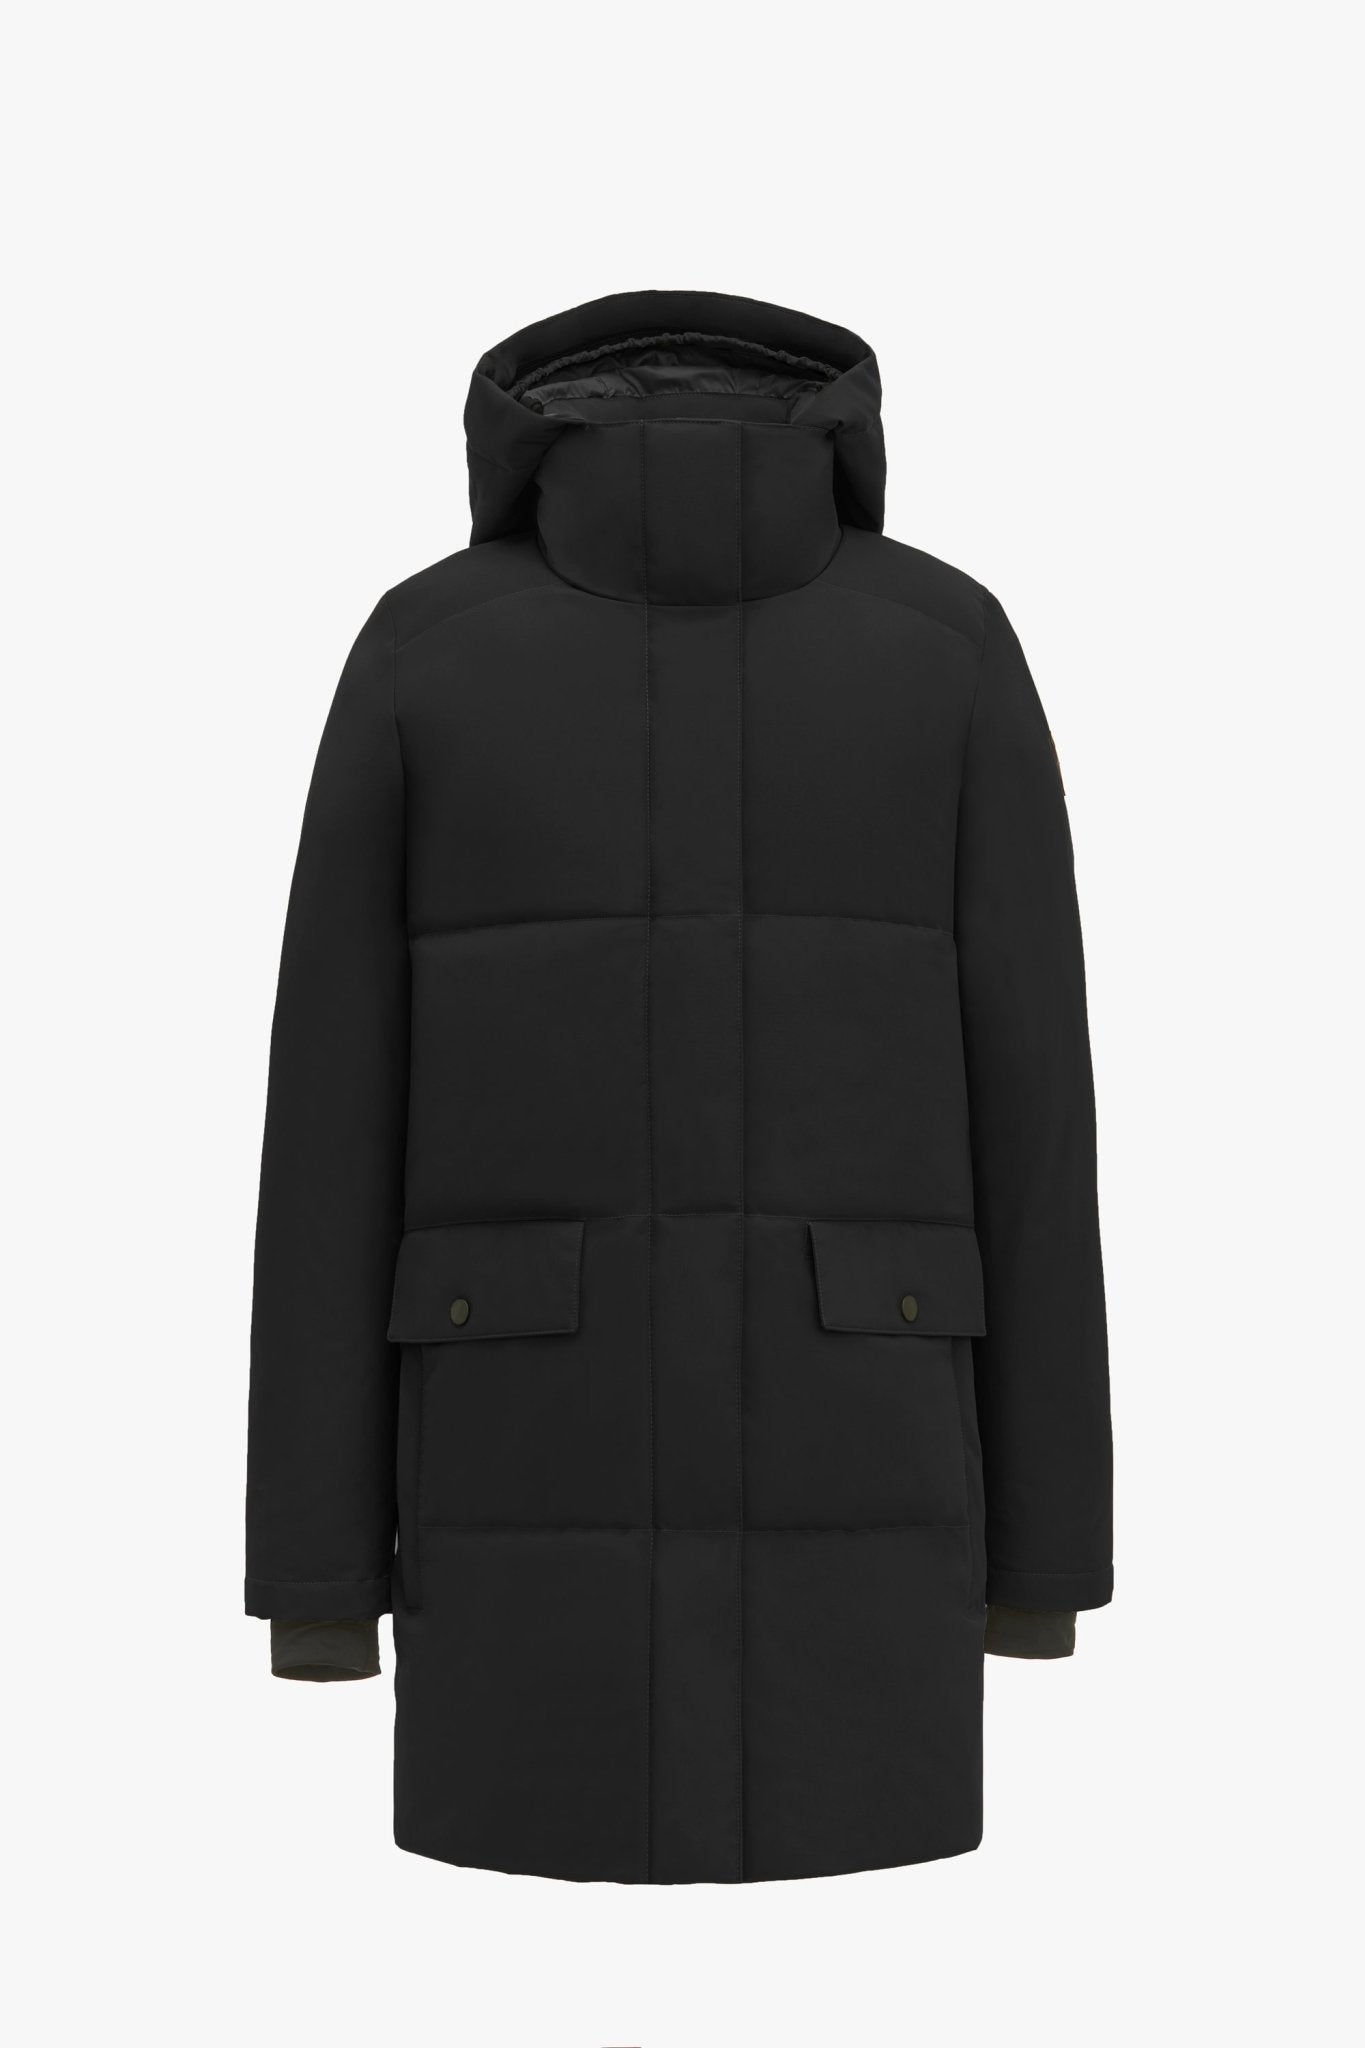 QUARTZ Co CHLOE 2.0 NF - Hooded Down Winter Jacket - FINAL SALE - Boutique Bubbles